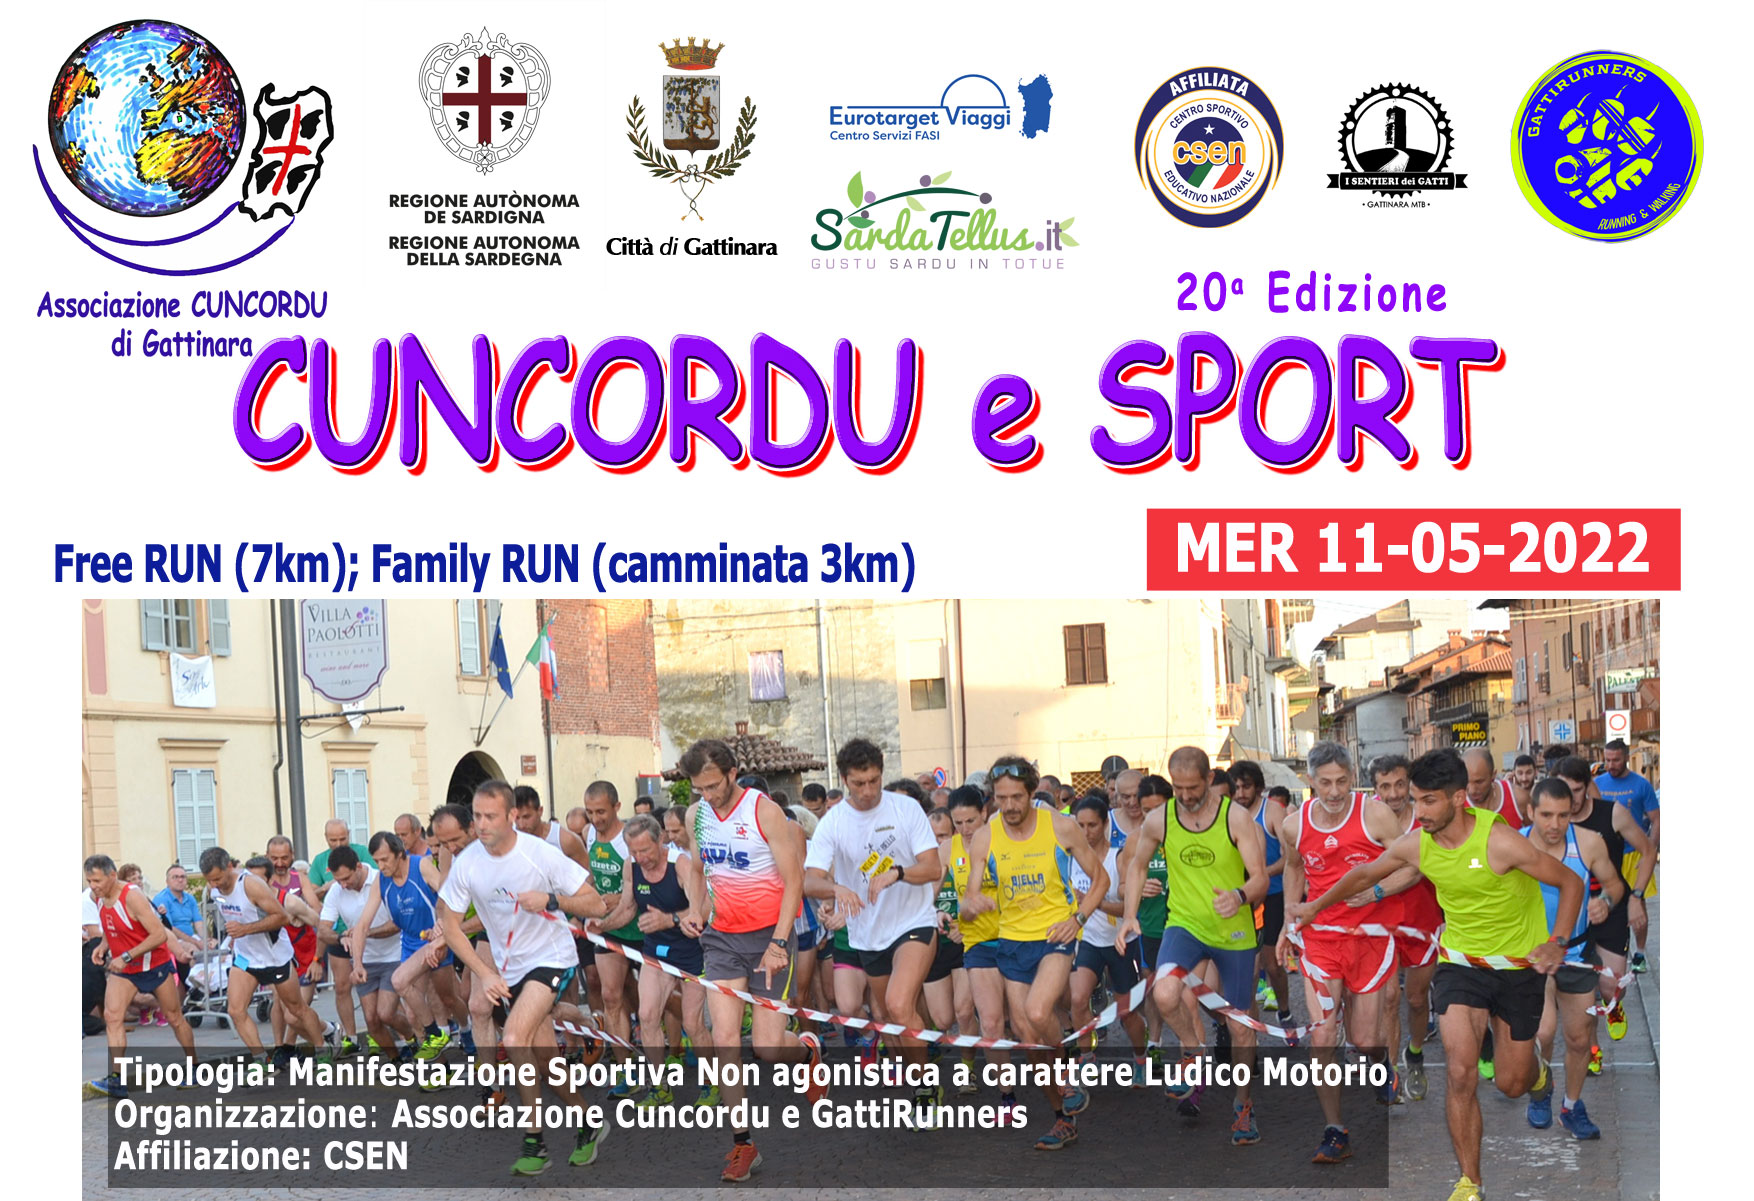 11-05-2022 - Cuncordu e Sport